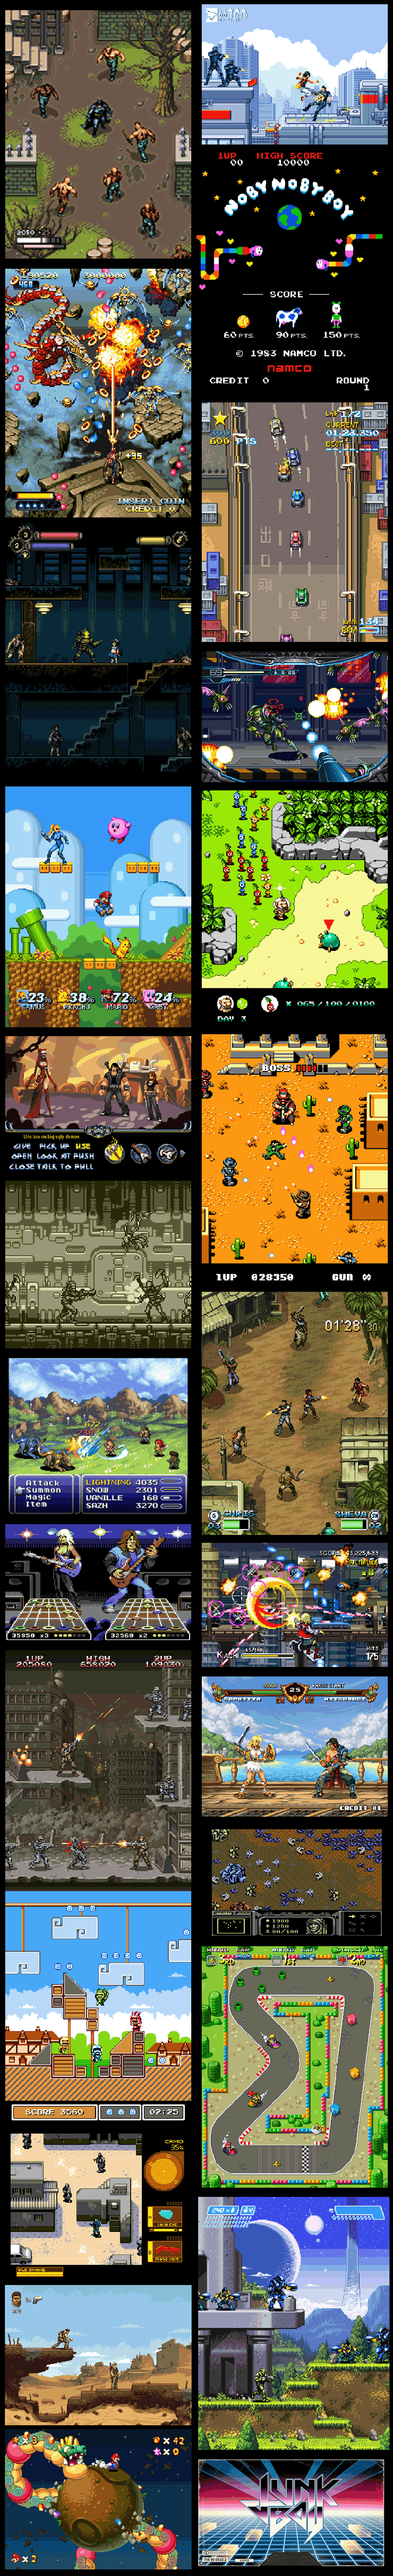 Des jeux actuels revisités façon 2D et pixels.